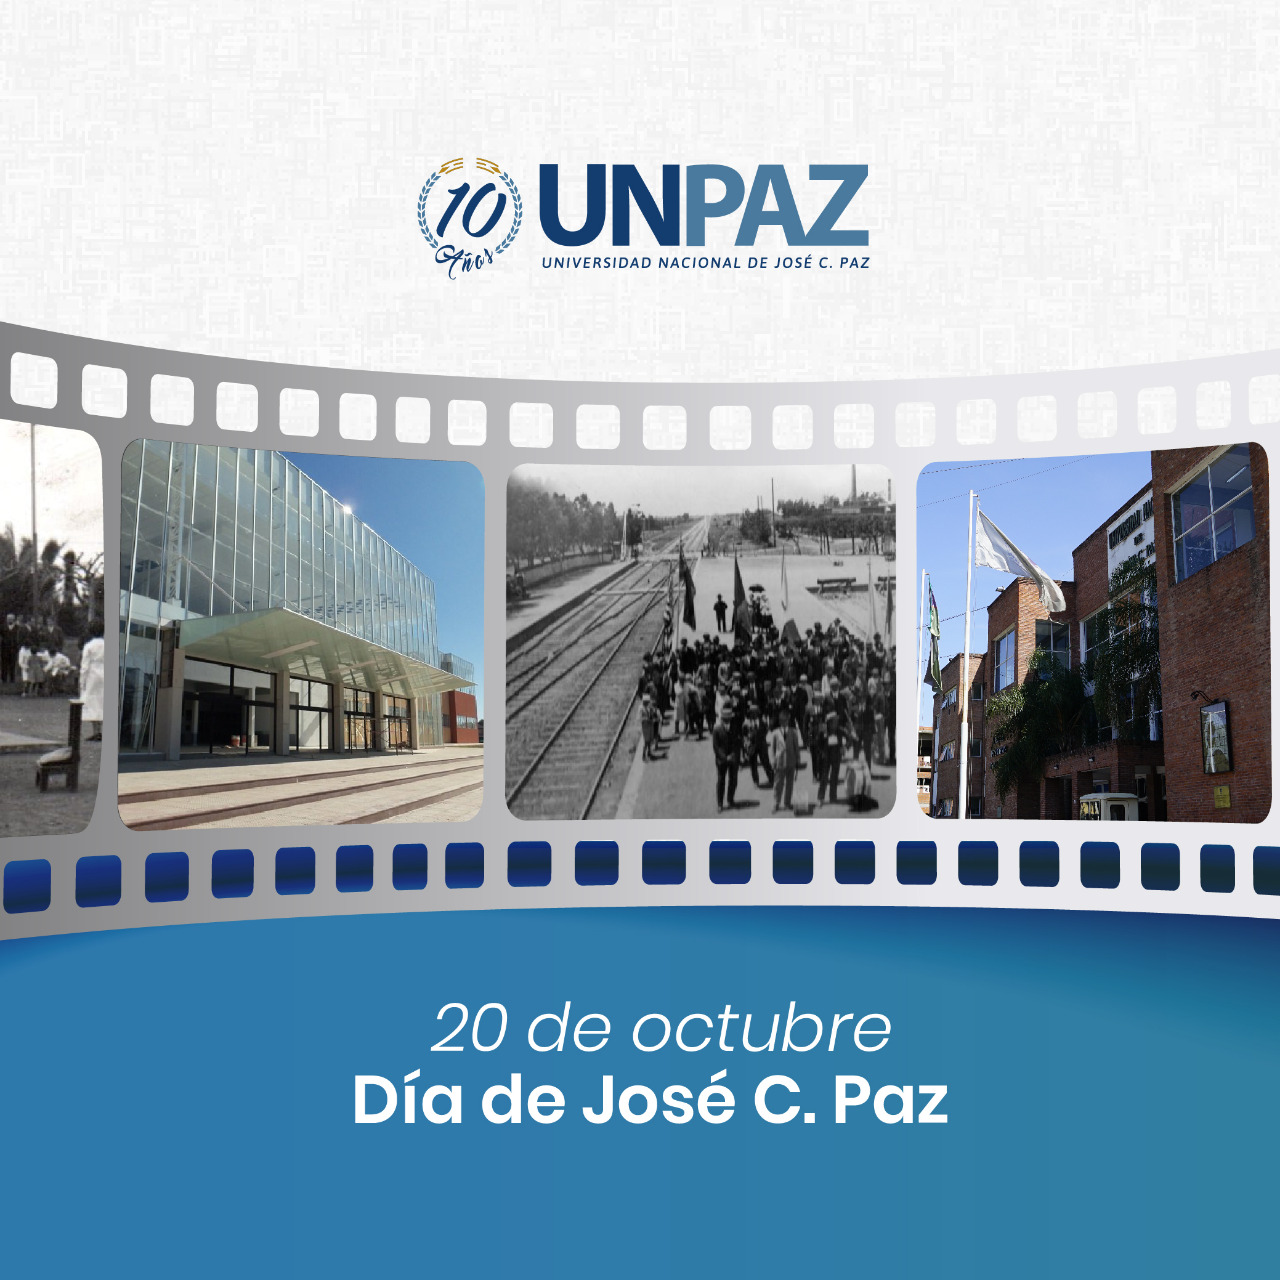 Fotos: gentileza Museo Histórico de José C. Paz